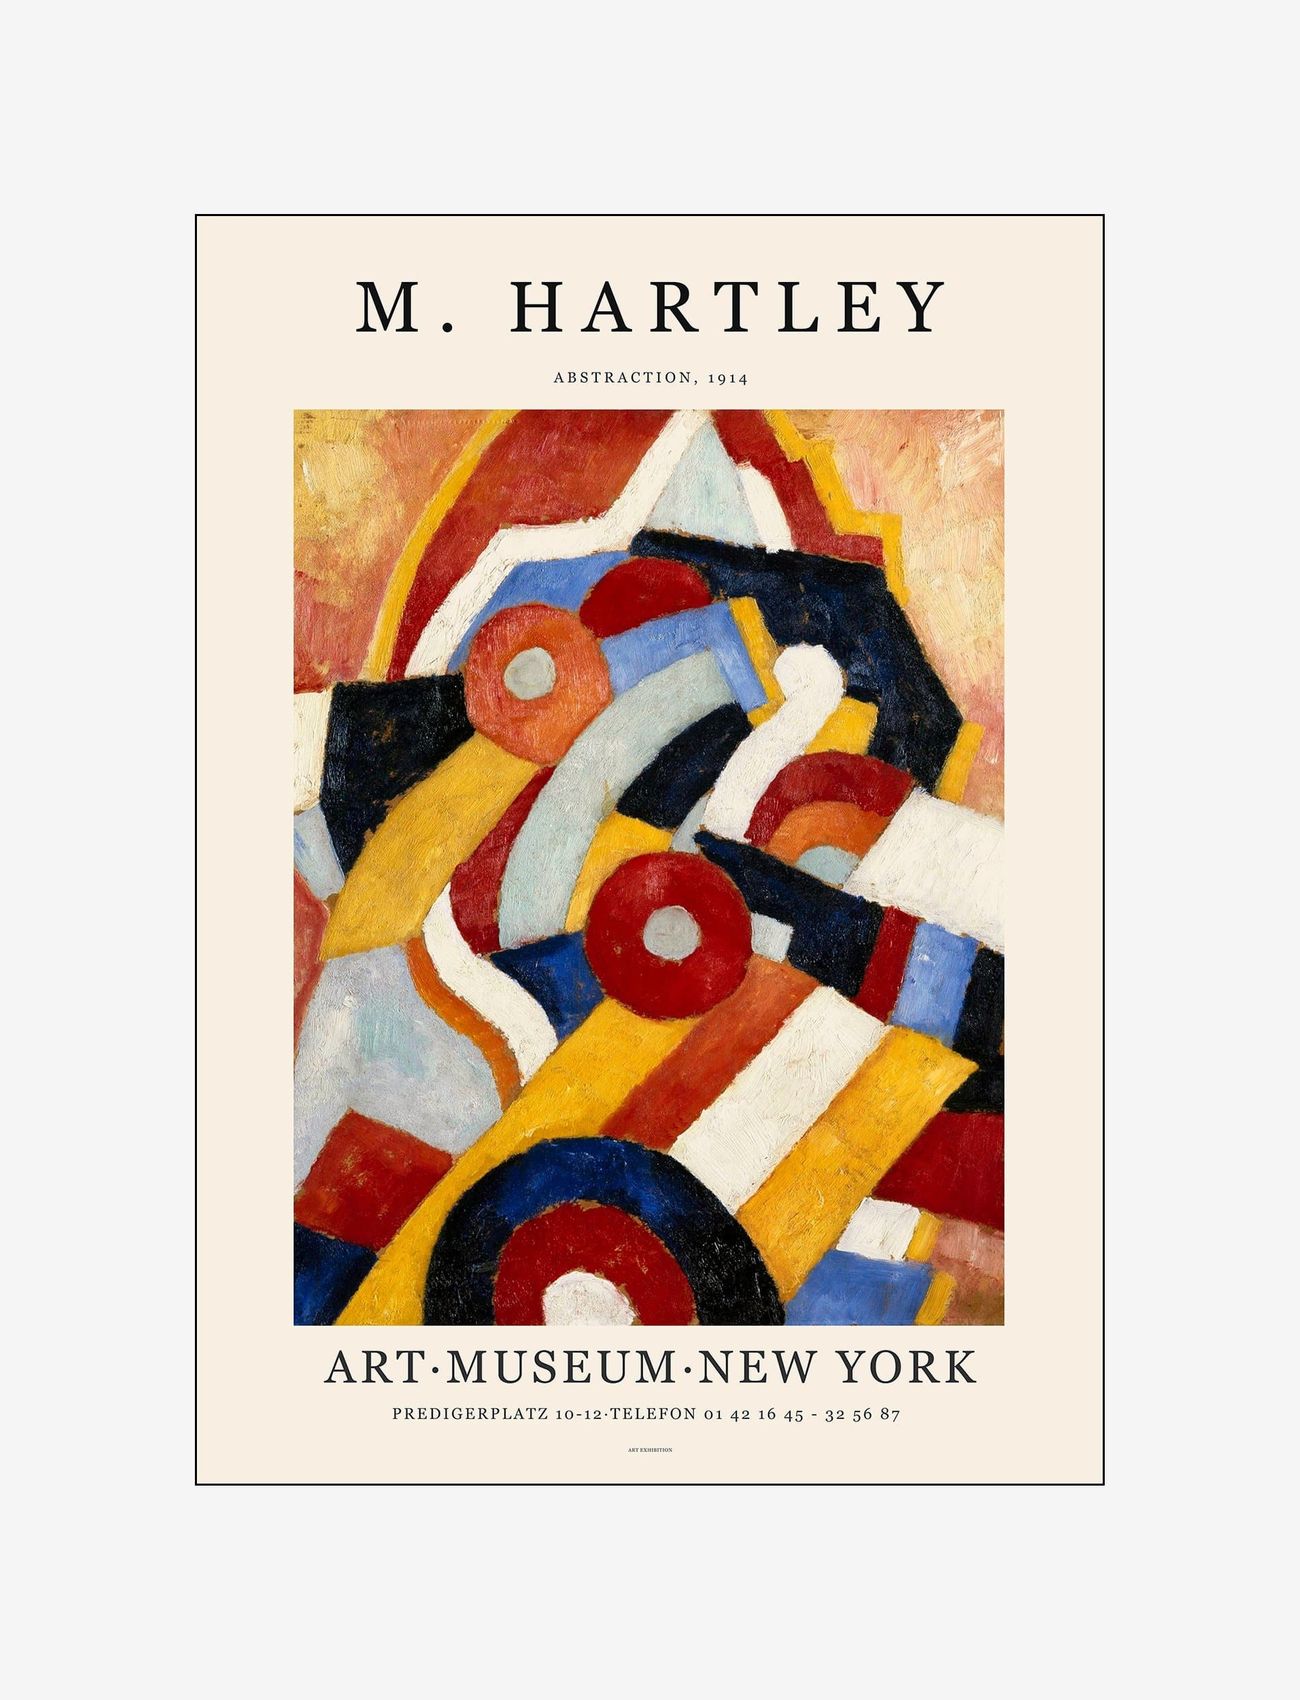 PSTR Studio - mardsen-hartley-art-exhibition - iliustracijos - multi-colored - 0